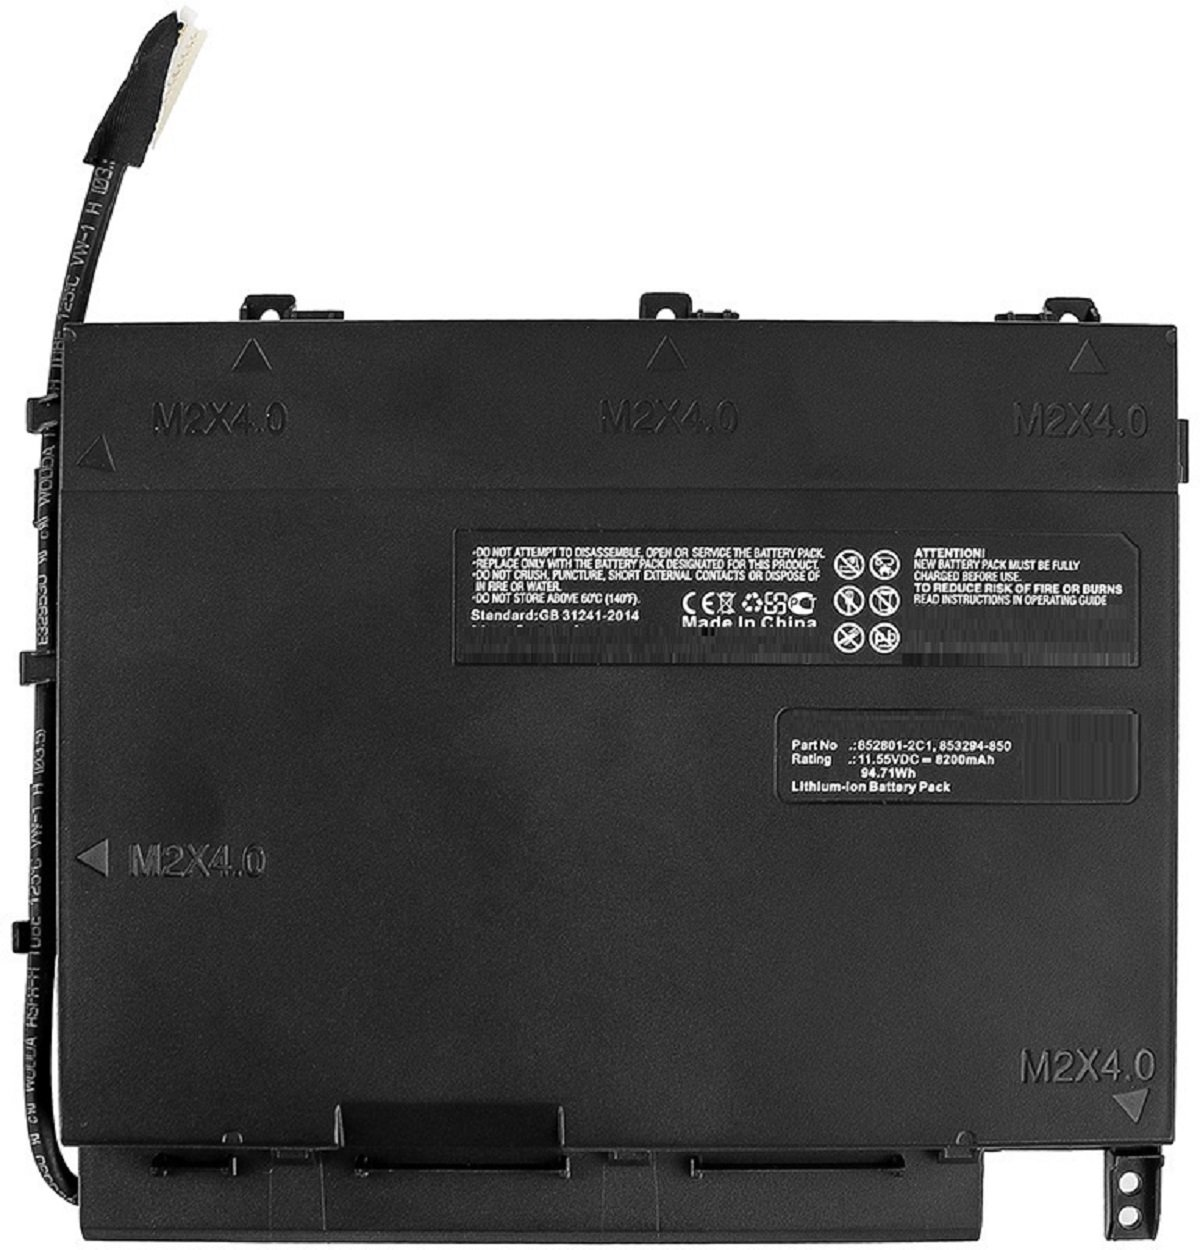 AGI Akku kompatibel mit Omen 8200 Volt, Notebookakku, 11.55 Li-Ion 17-W106NO mAh Li-Ion, HP